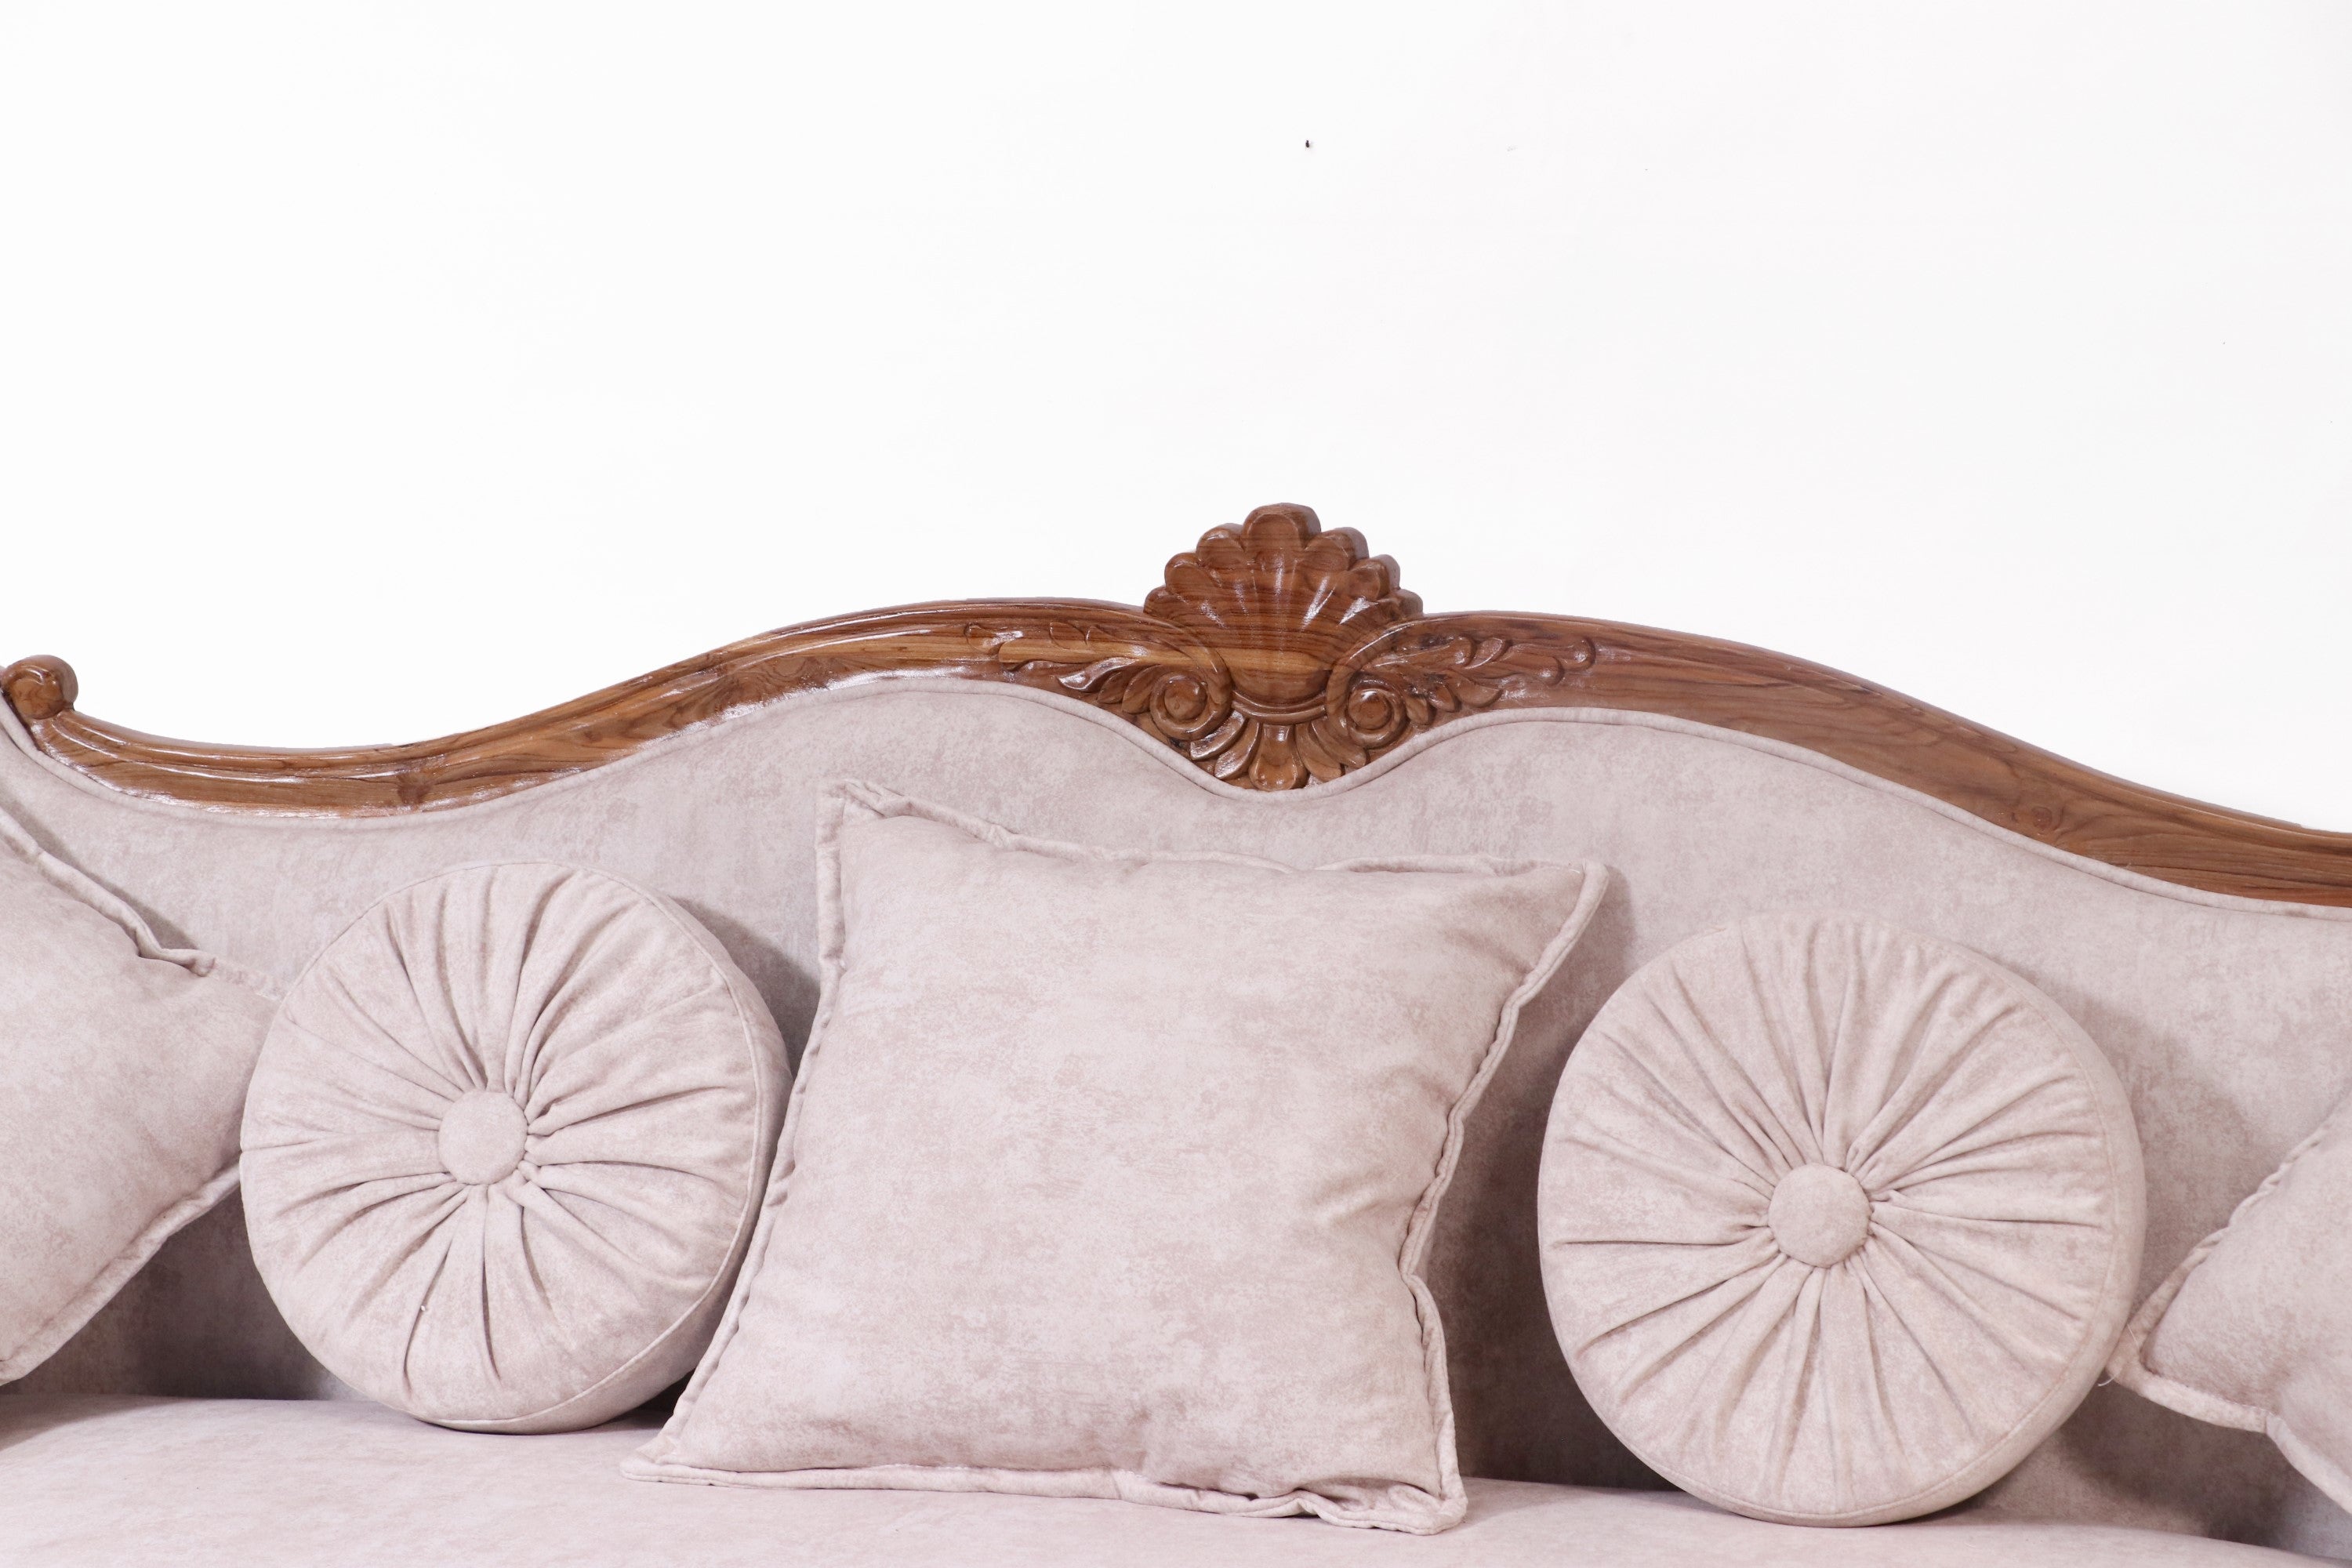 Classical vive la france concept teak wood sofa Sofa